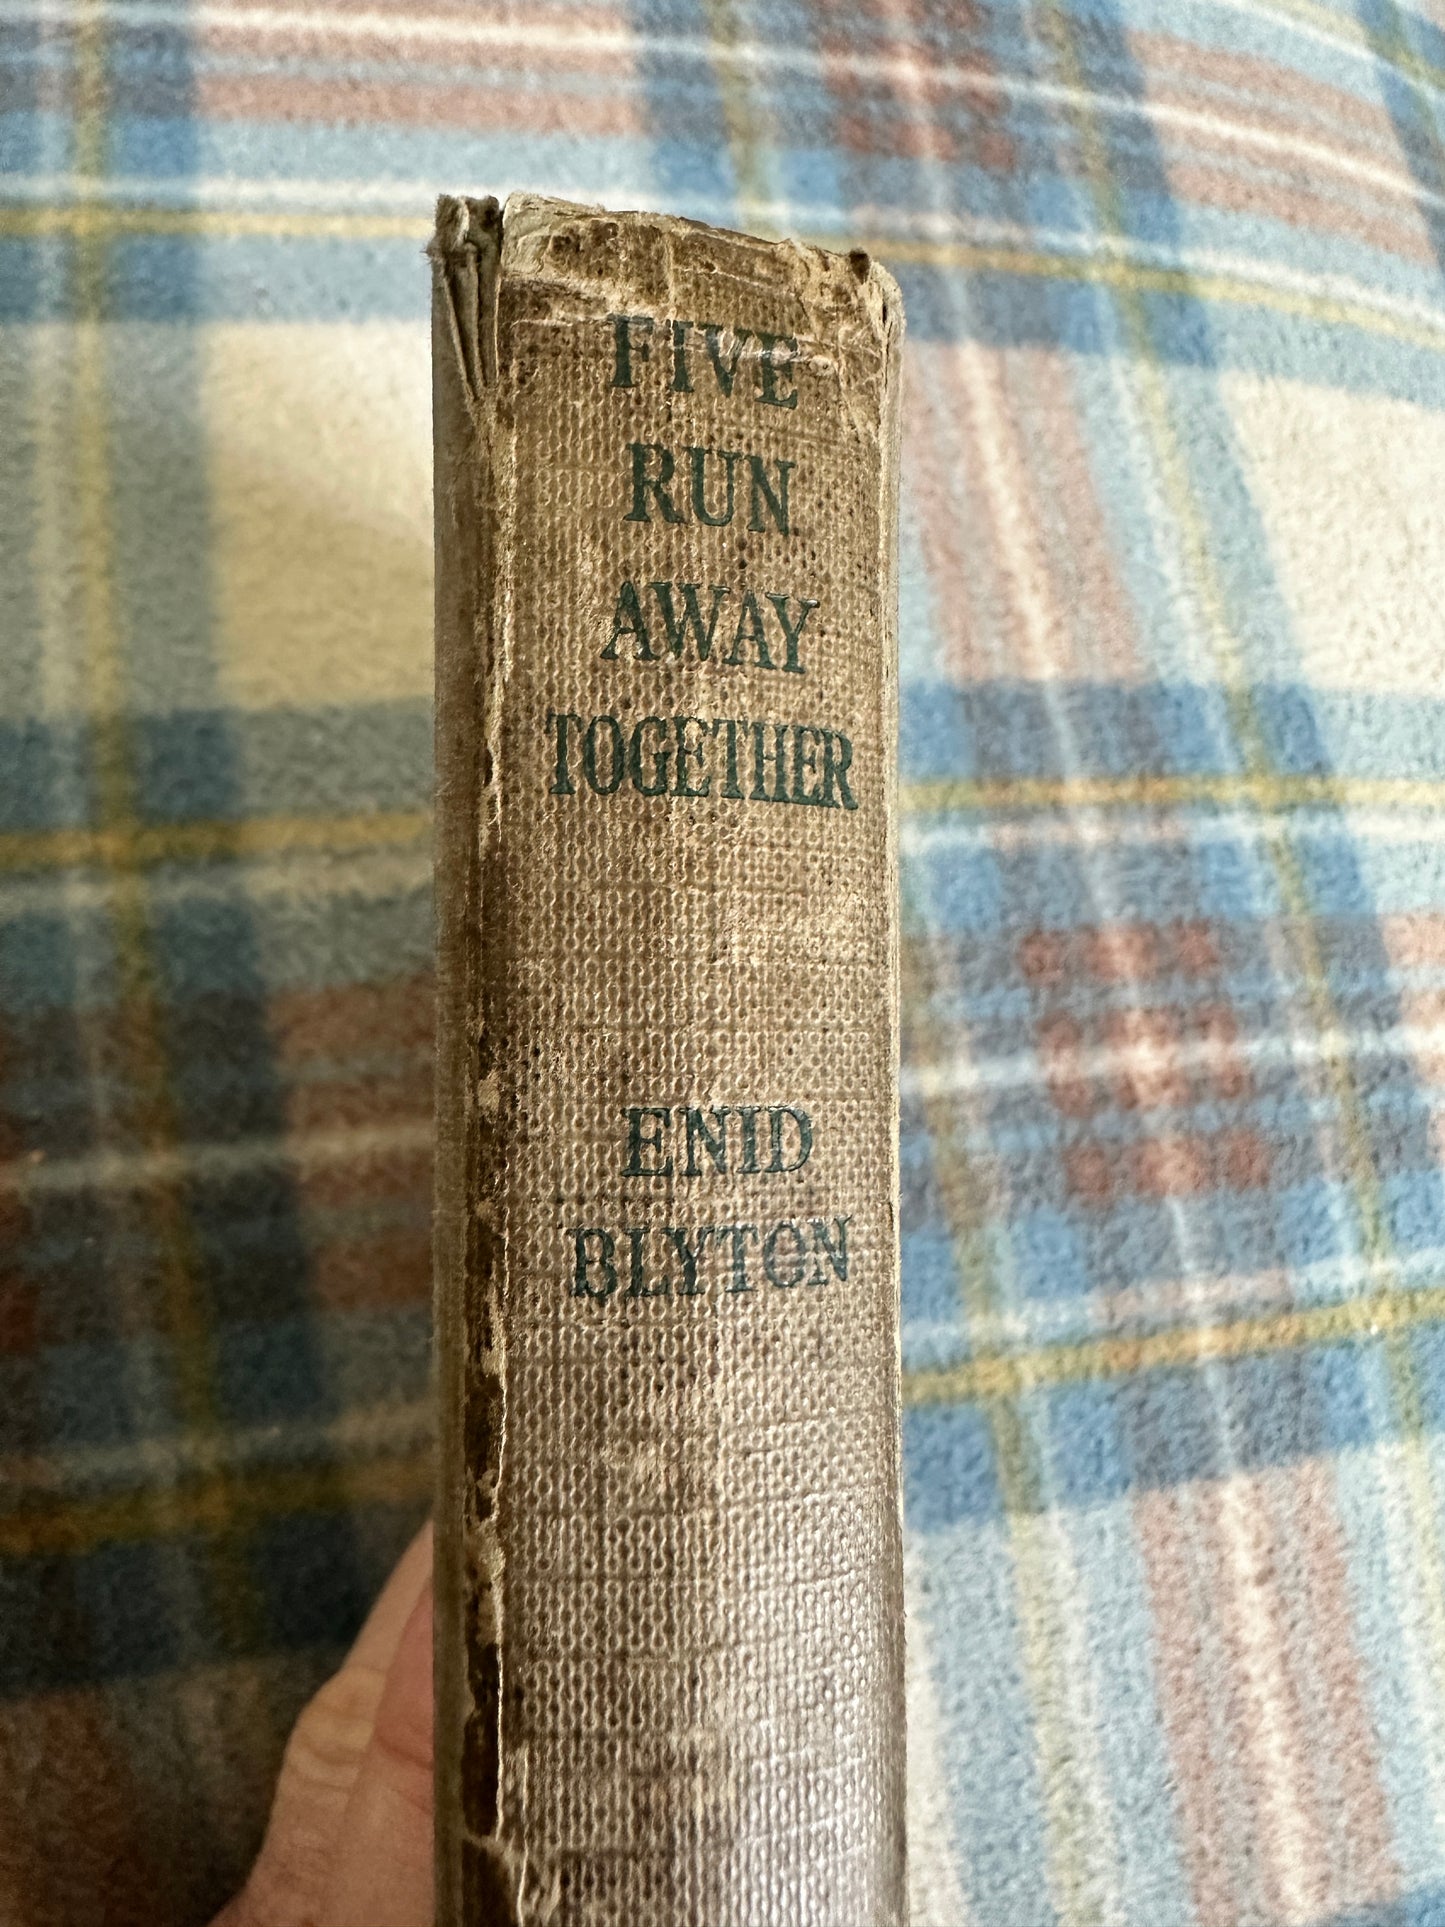 1951 Five Run Away Together - Enid Blyton(Eileen Soper illustration) Hodder & Stoughton